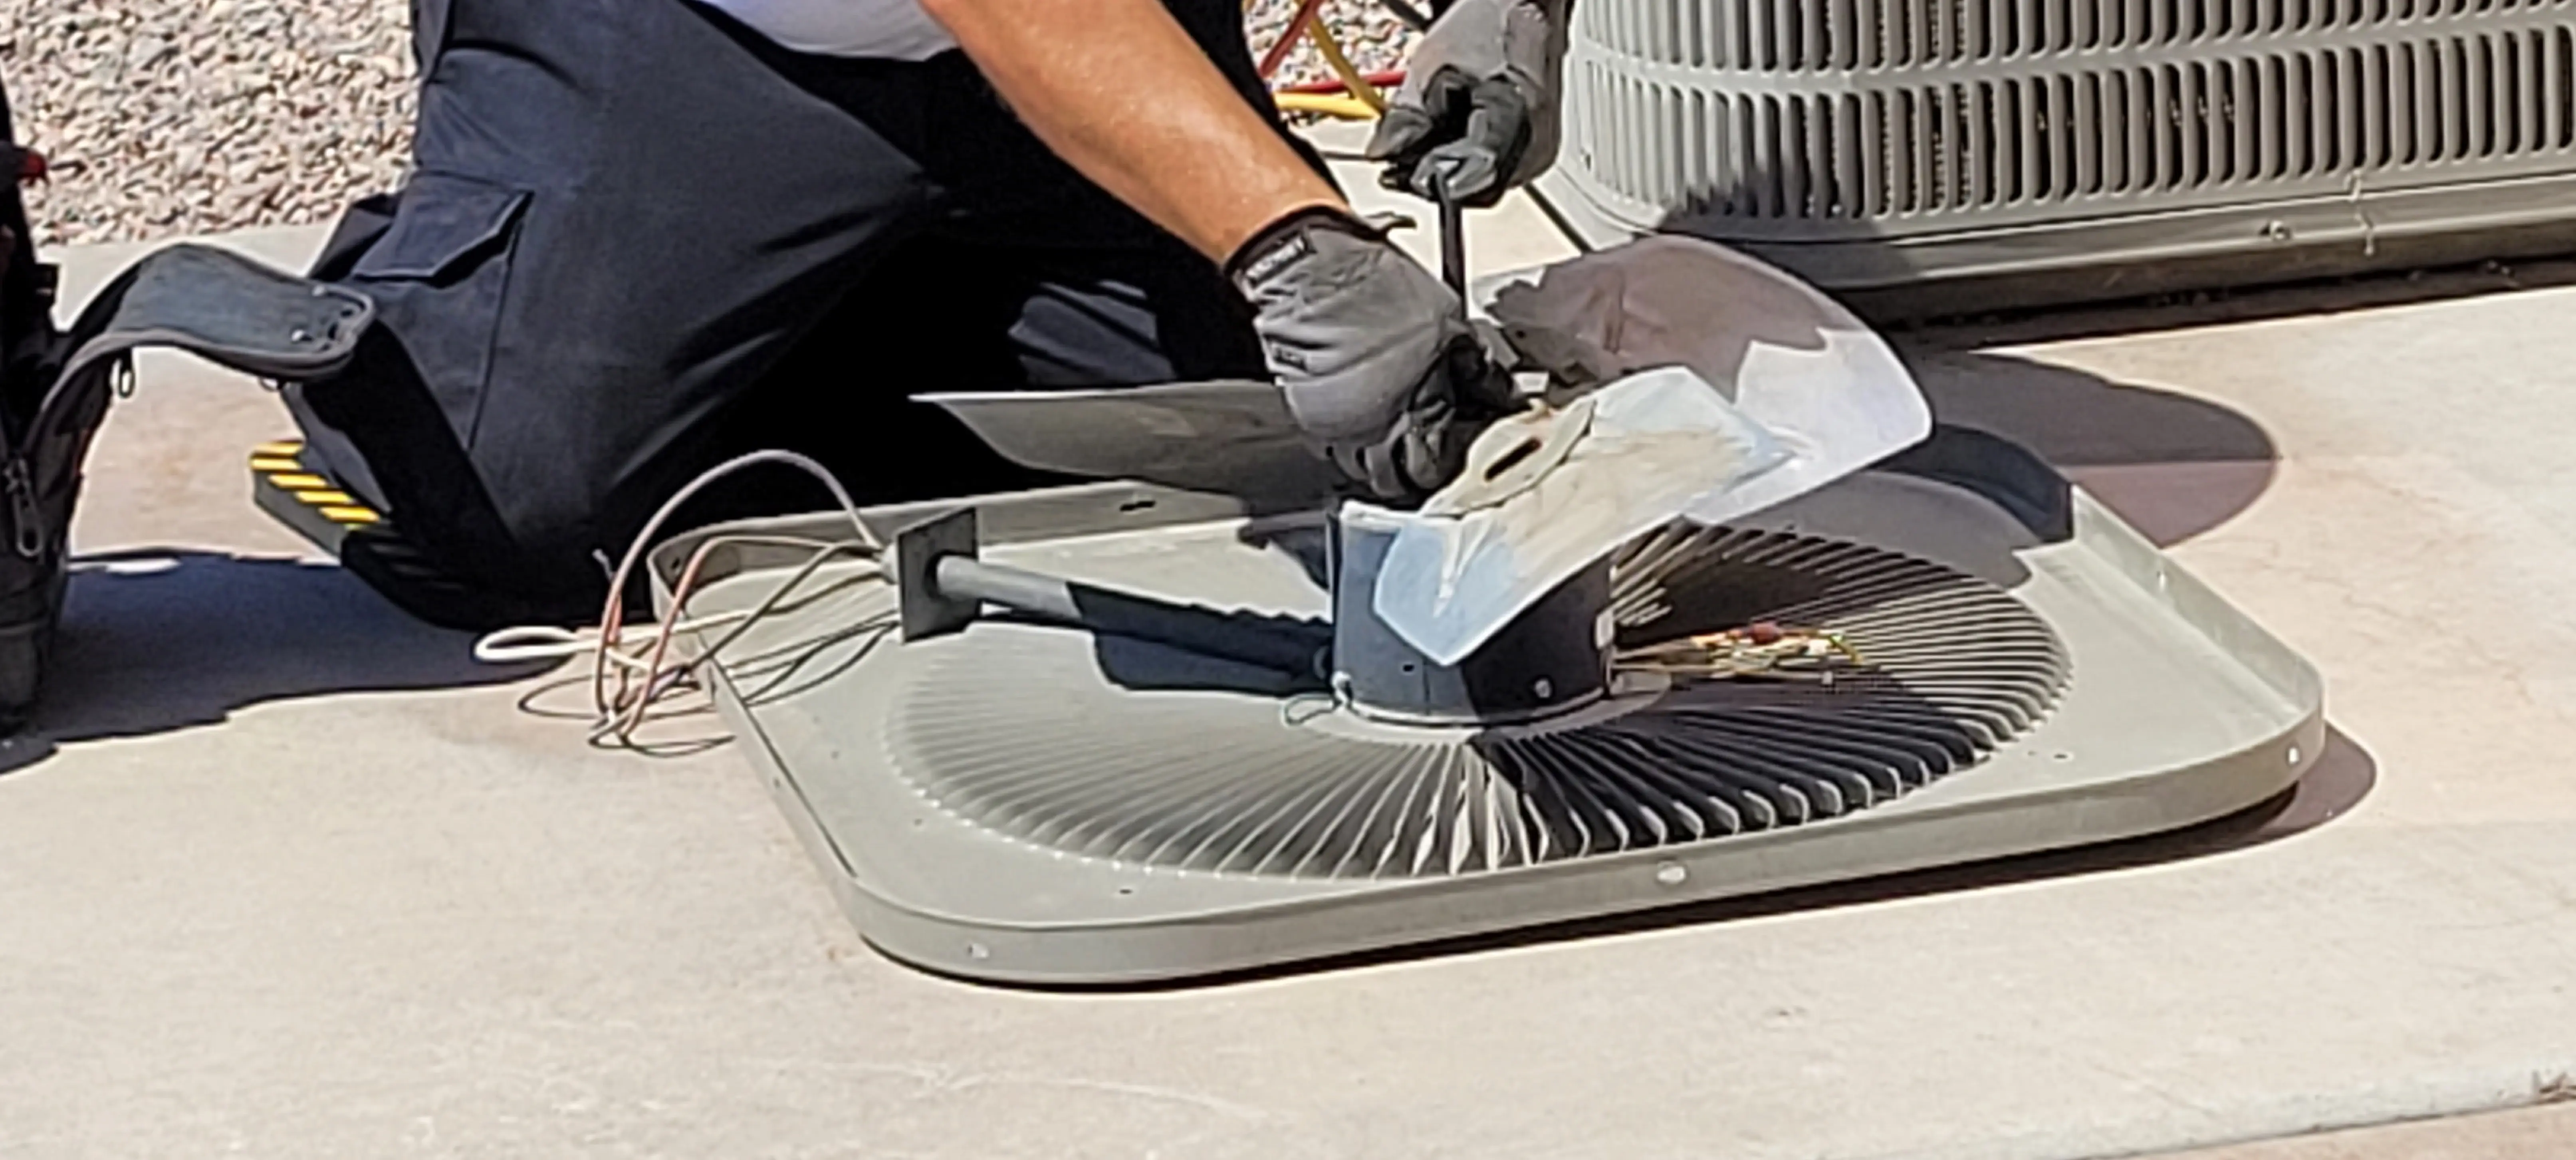 Air-Conditioning-Repair--in-Bastrop-Texas-Air-Conditioning-Repair-4296816-image